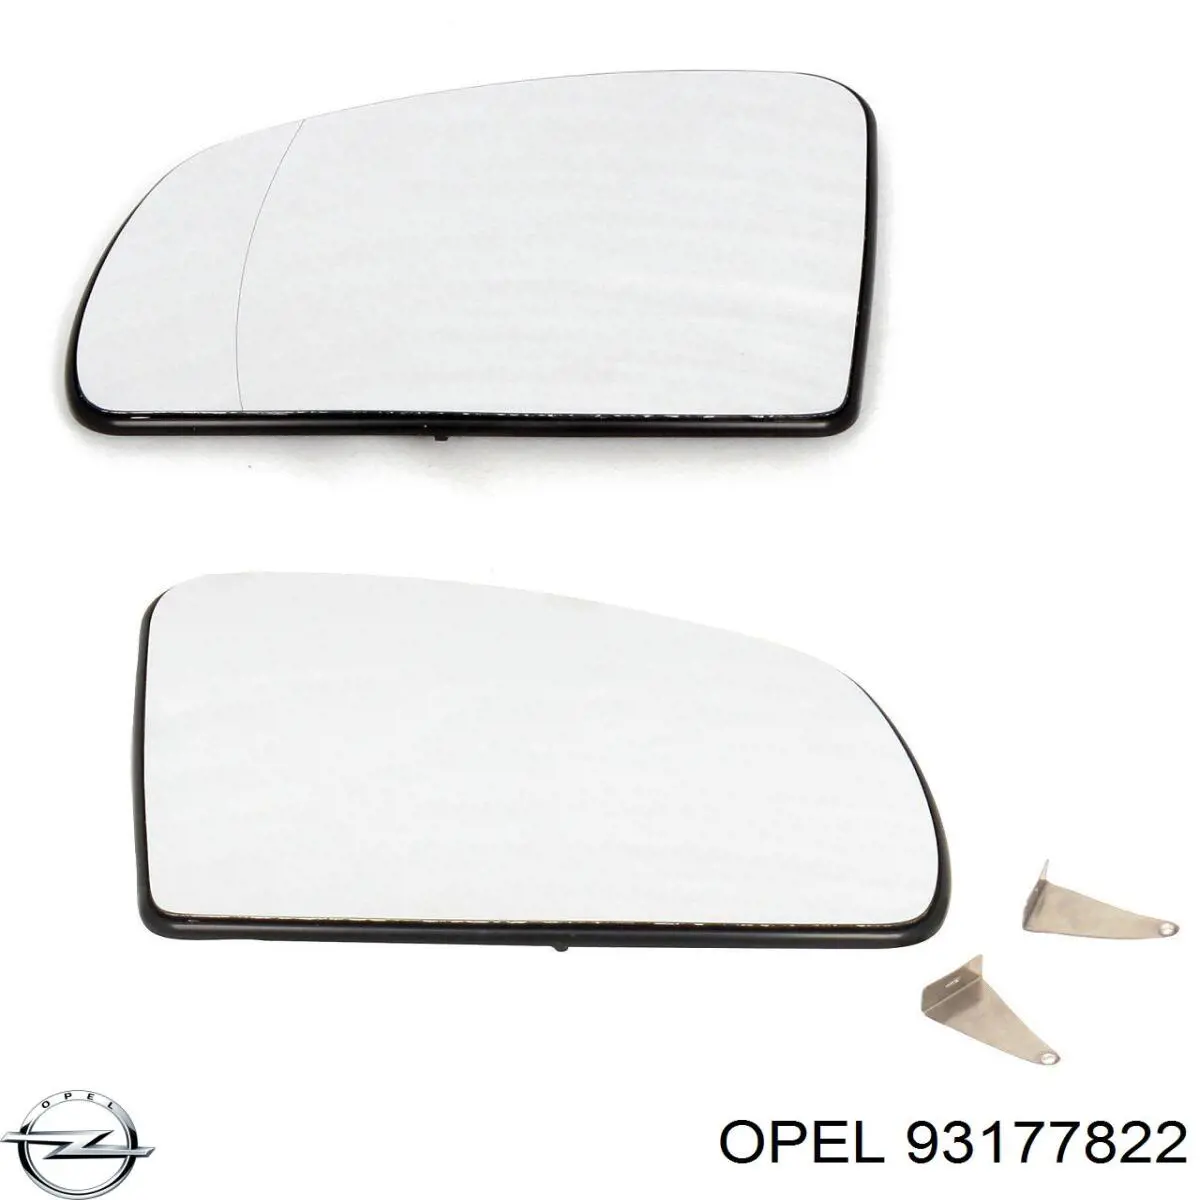 93177822 Opel cubierta de espejo retrovisor izquierdo